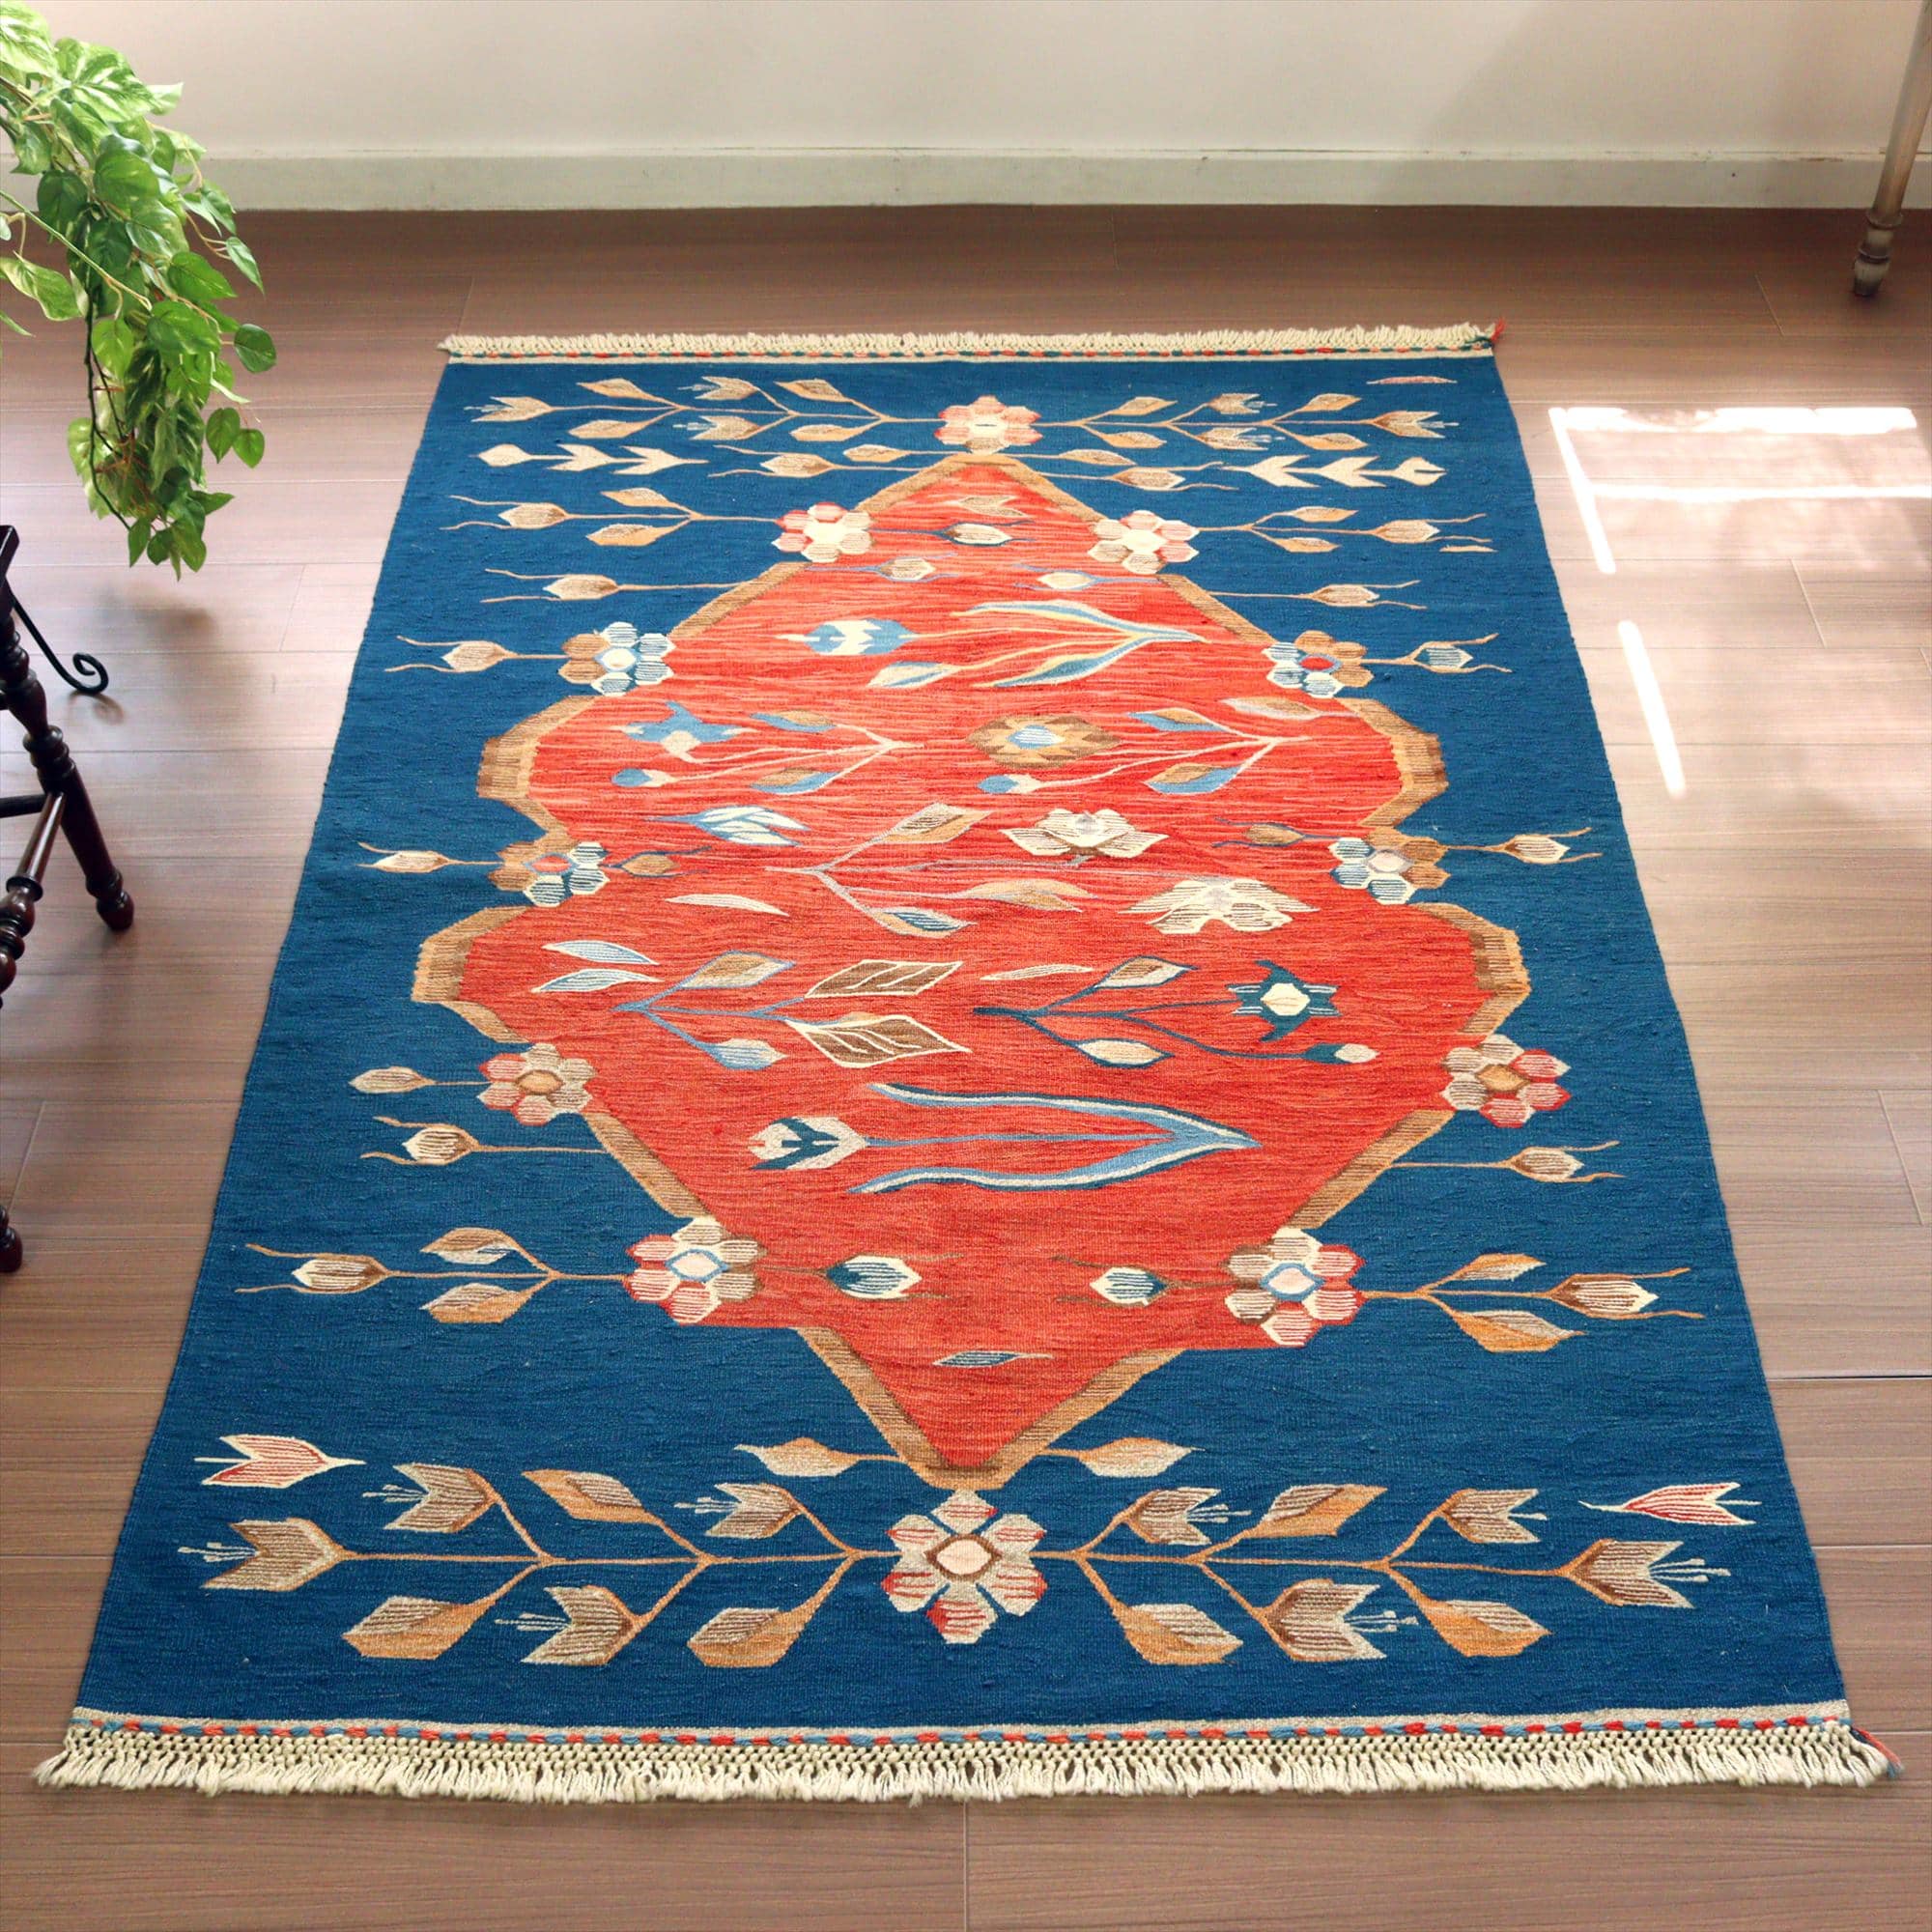 細かな織りのウシャクキリム・セッヂャーデ177×126cm チューリップと小花のモチーフ